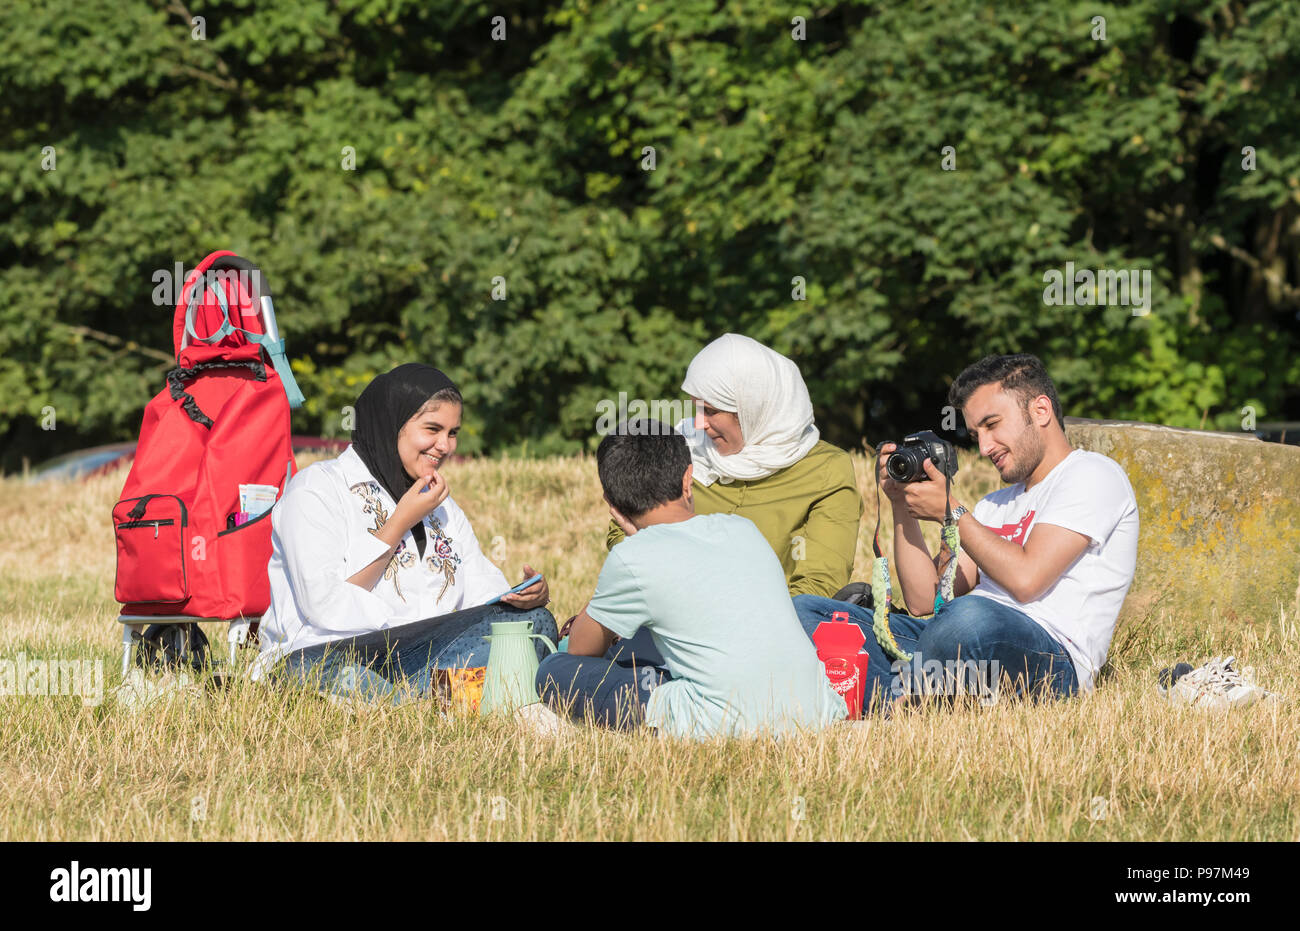 Asiatische Familie essen (mit einem Picknick, Picknick) außerhalb in der britischen Landschaft in East Sussex, England, Großbritannien. Jeden Tag. Stockfoto